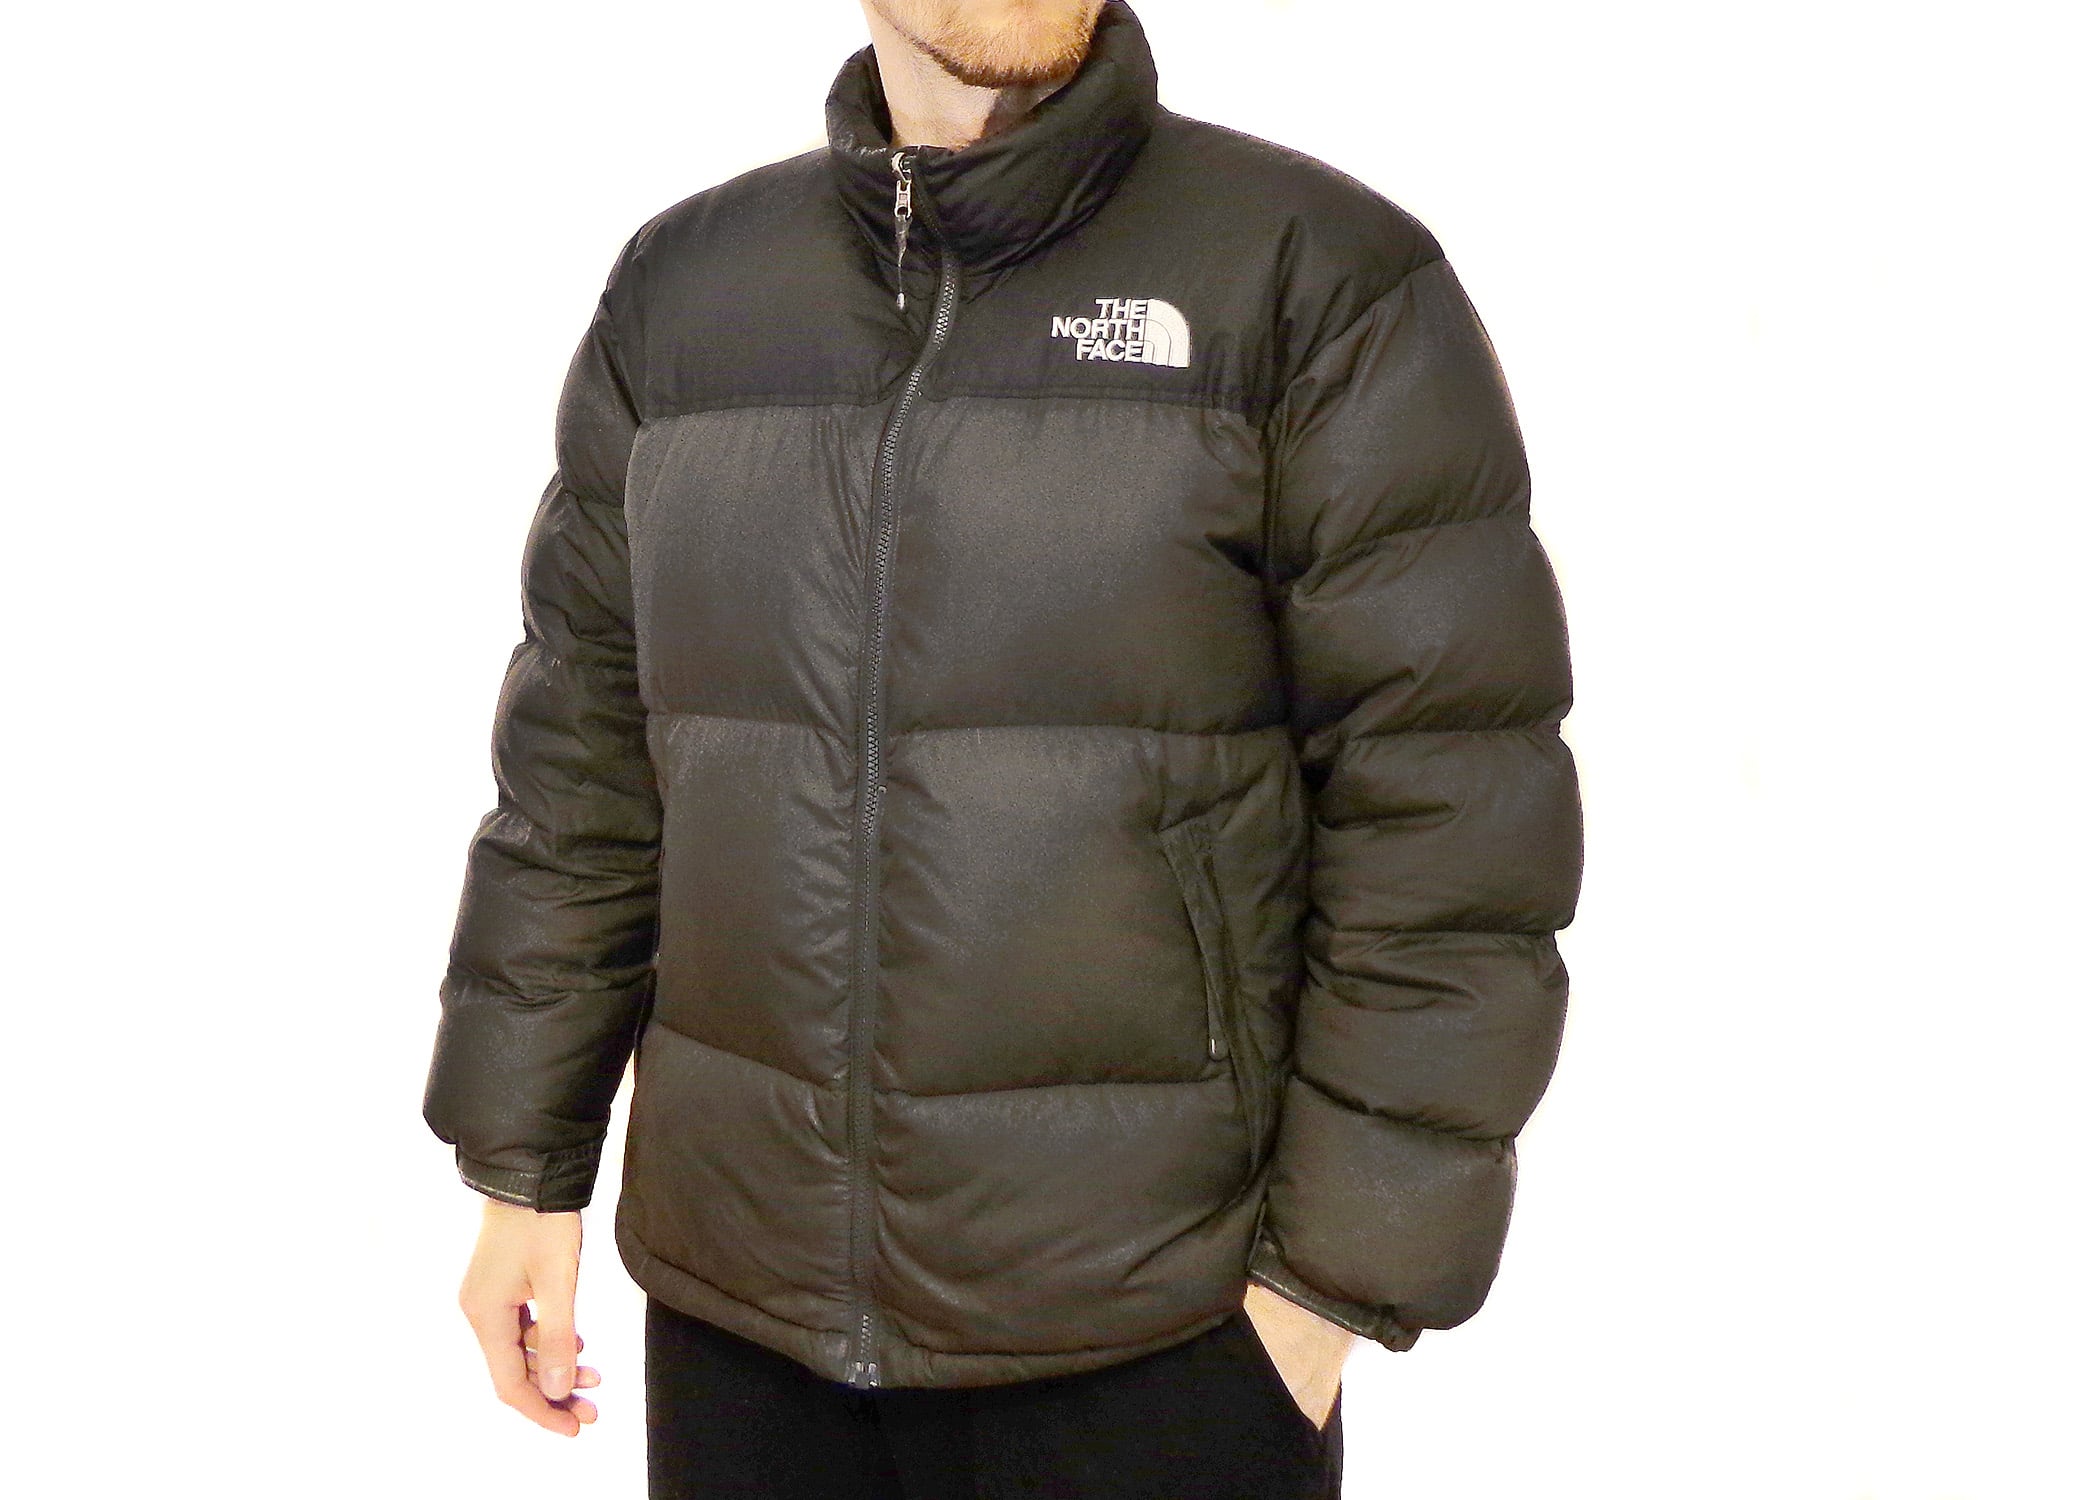 FS: North Face Nuptse 700 jacket — ajb007